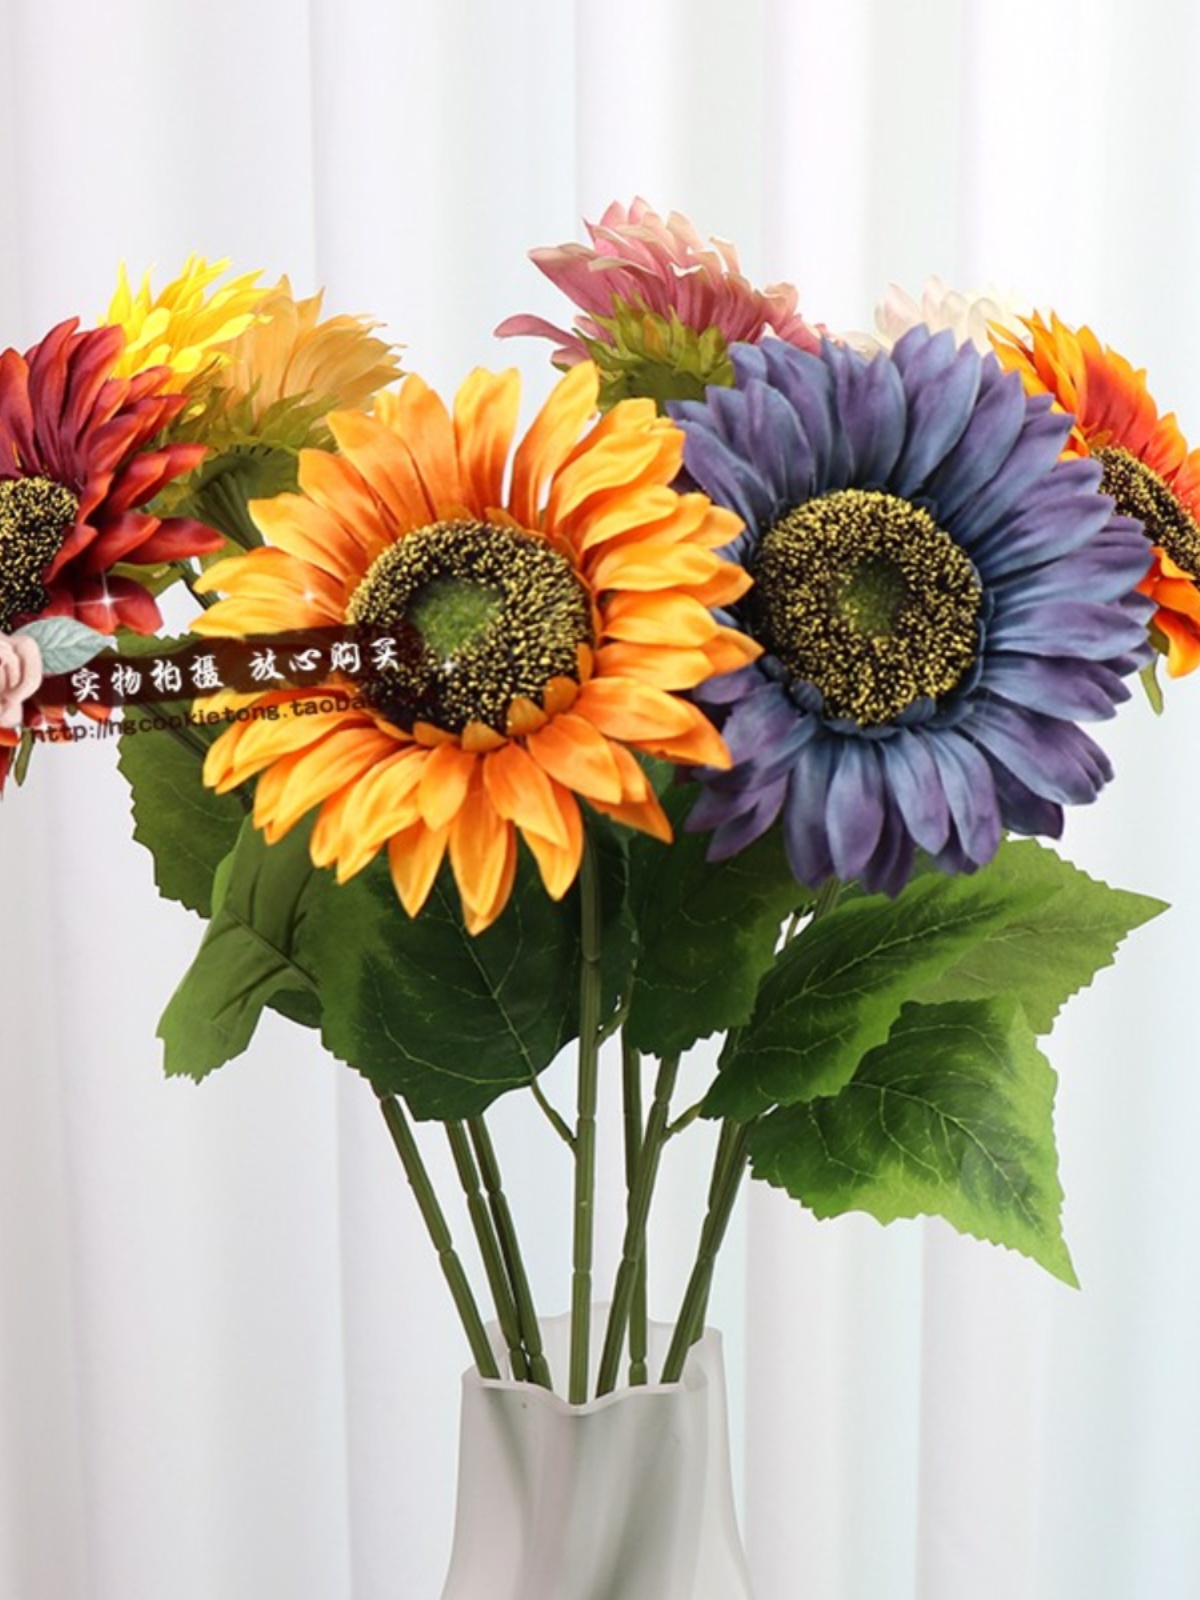 時尚絹花向日葵裝飾家居客廳擺件拍攝道具假花太陽花藝品